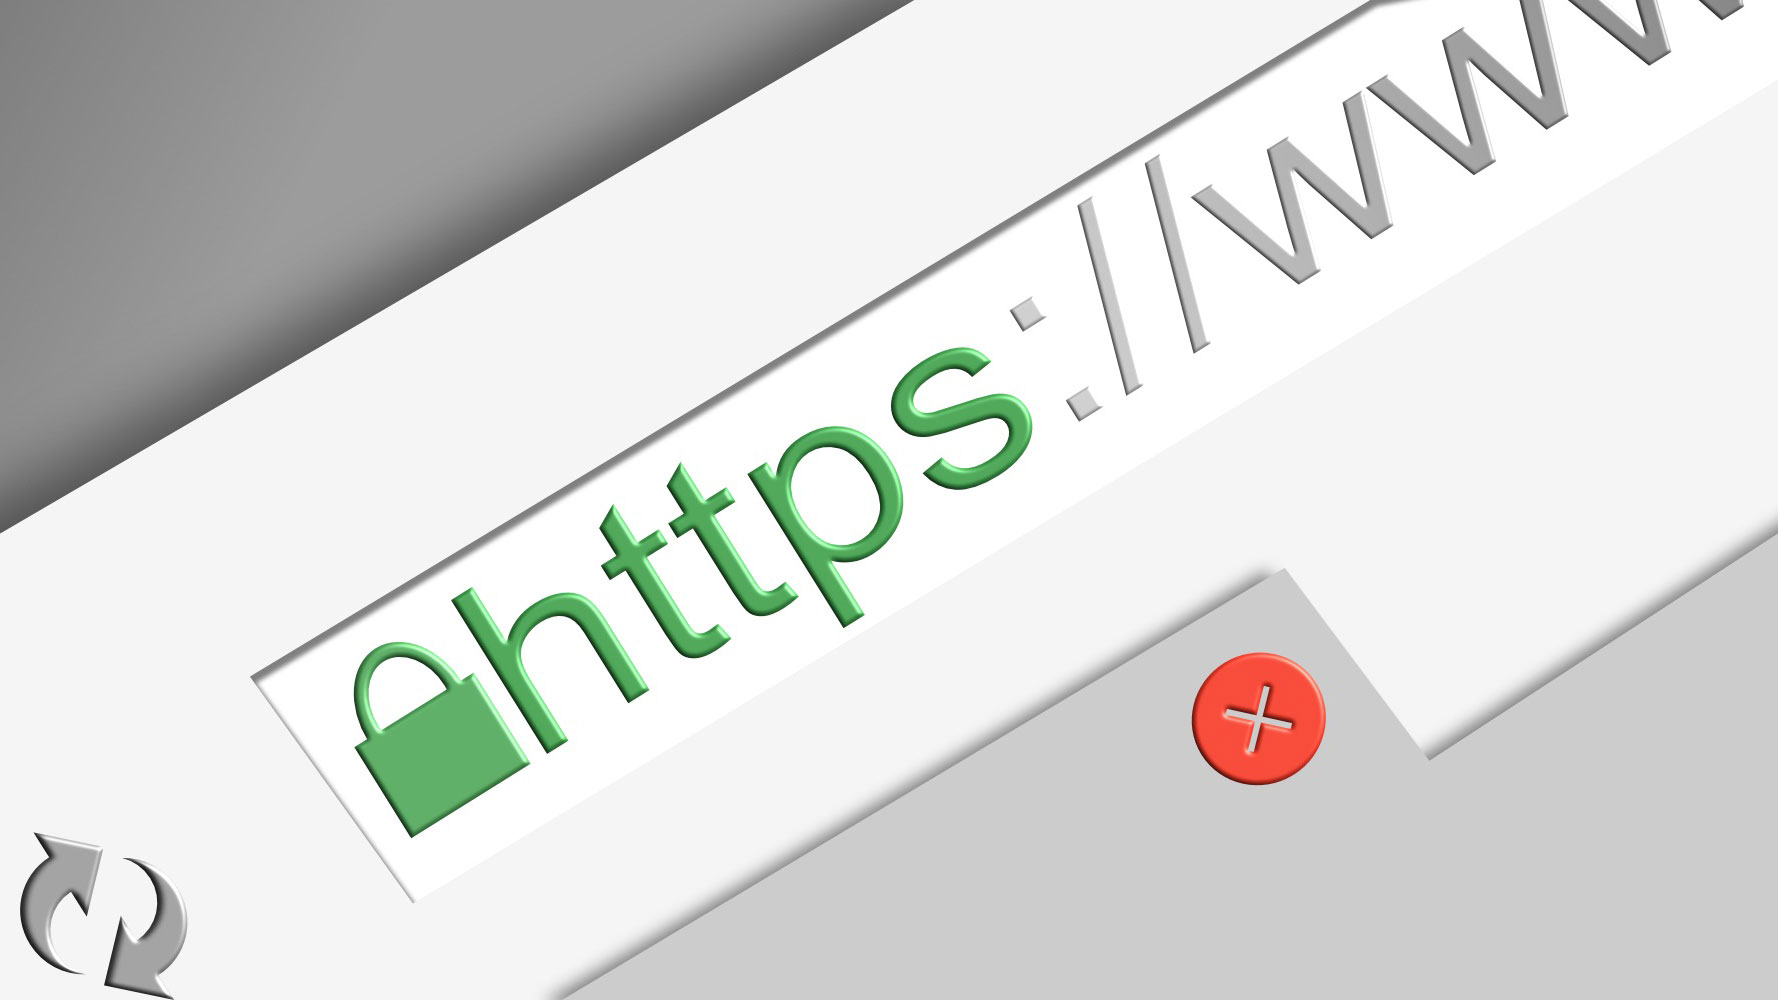 https-secure-website-image-for-not-secure-websites-concerns-post.jpg